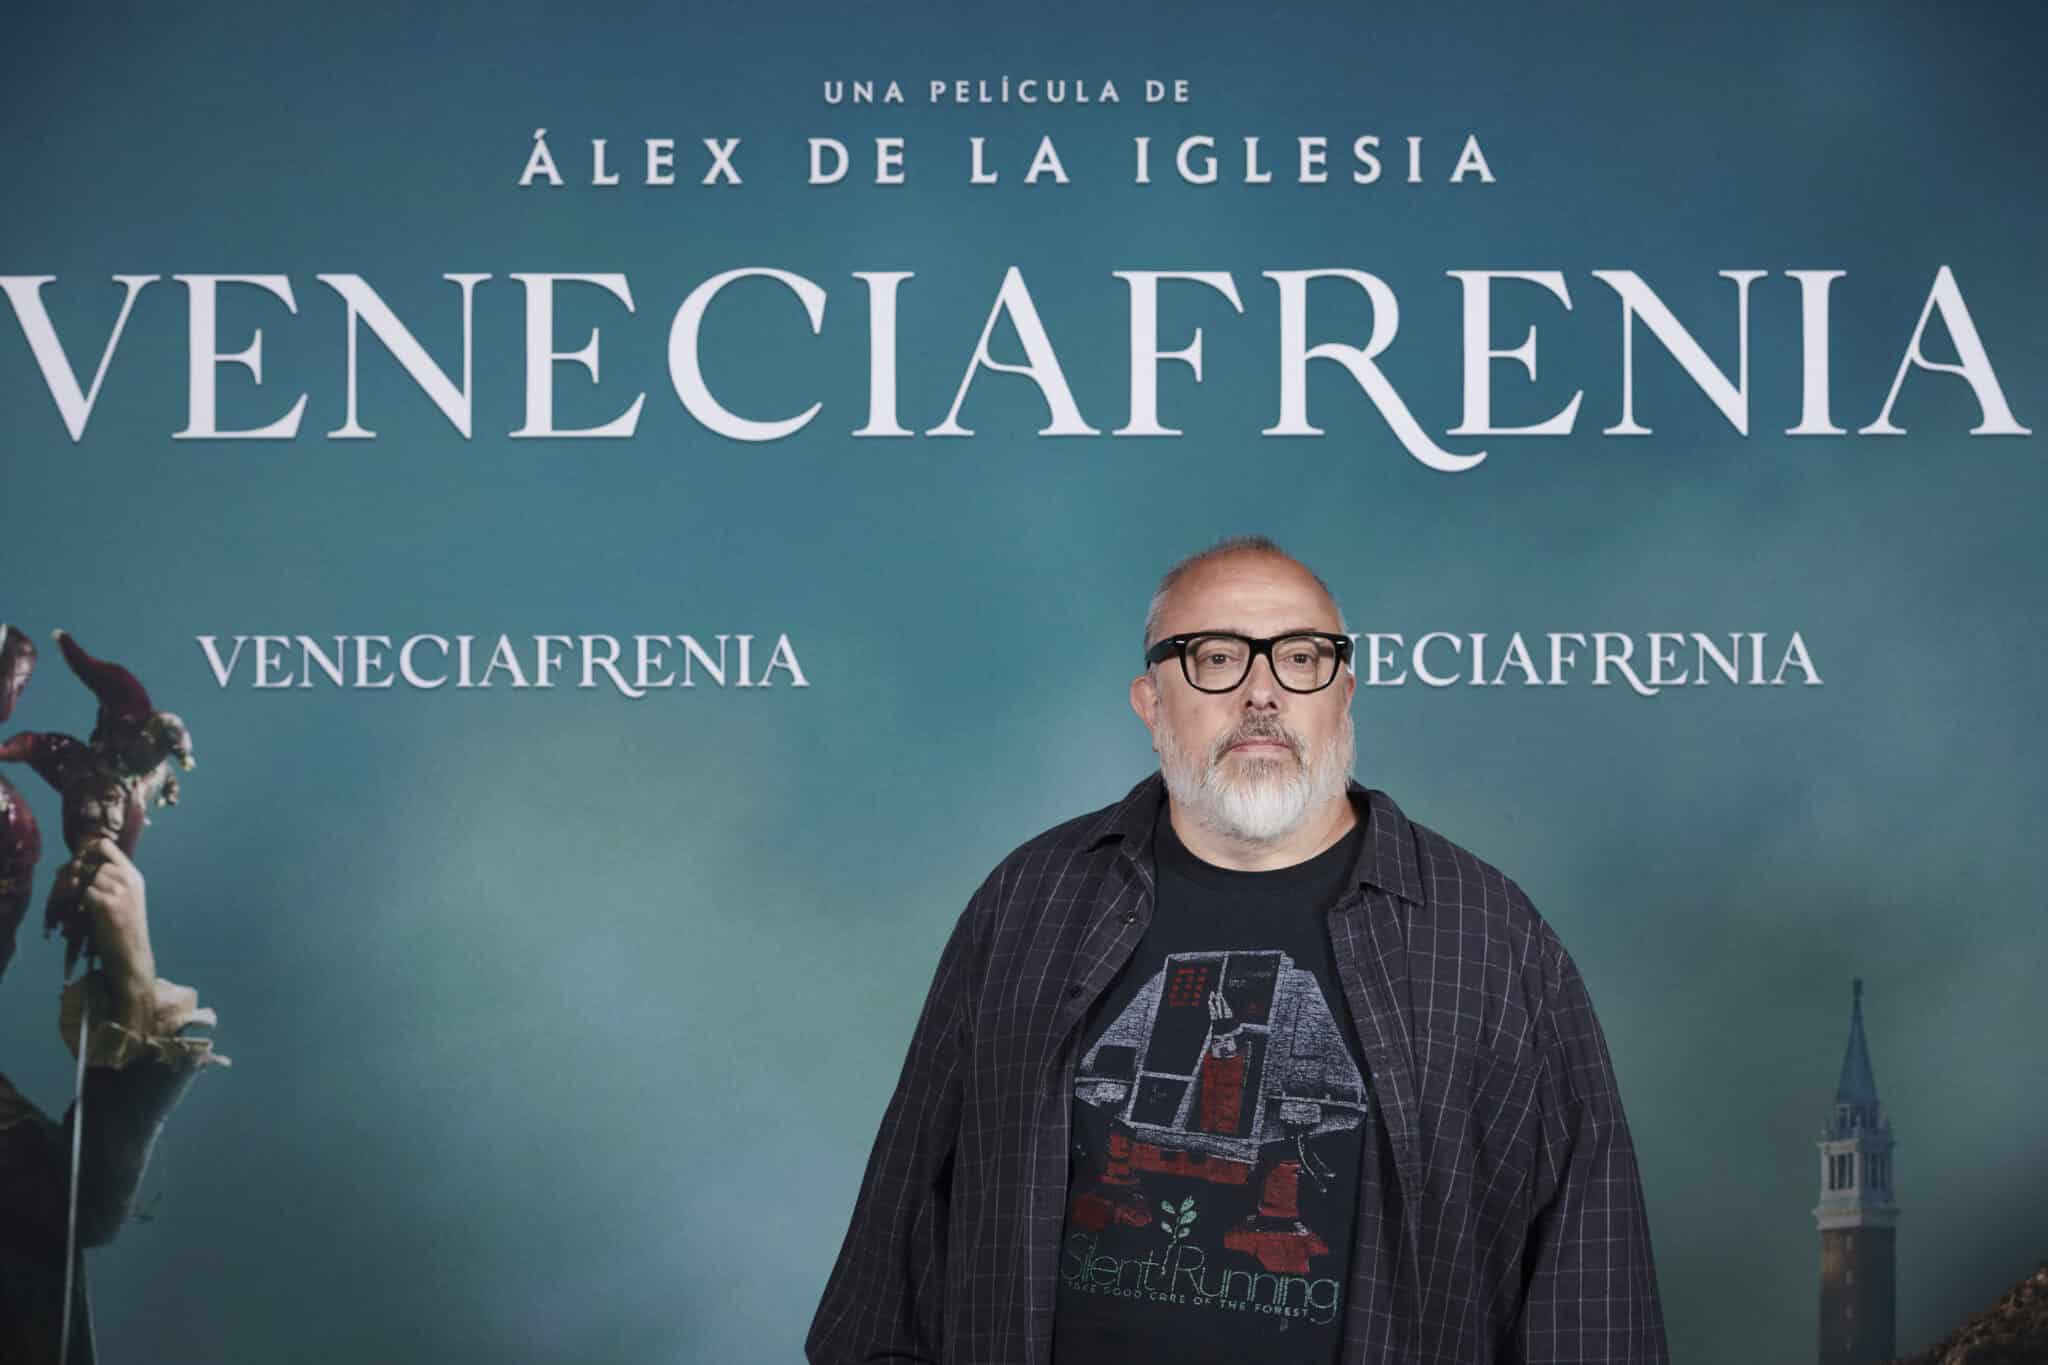 El director, productor y guionista de cine español y director de "Veneciafrenia" Álex de la Iglesia asiste al estreno de la nueva película de terror